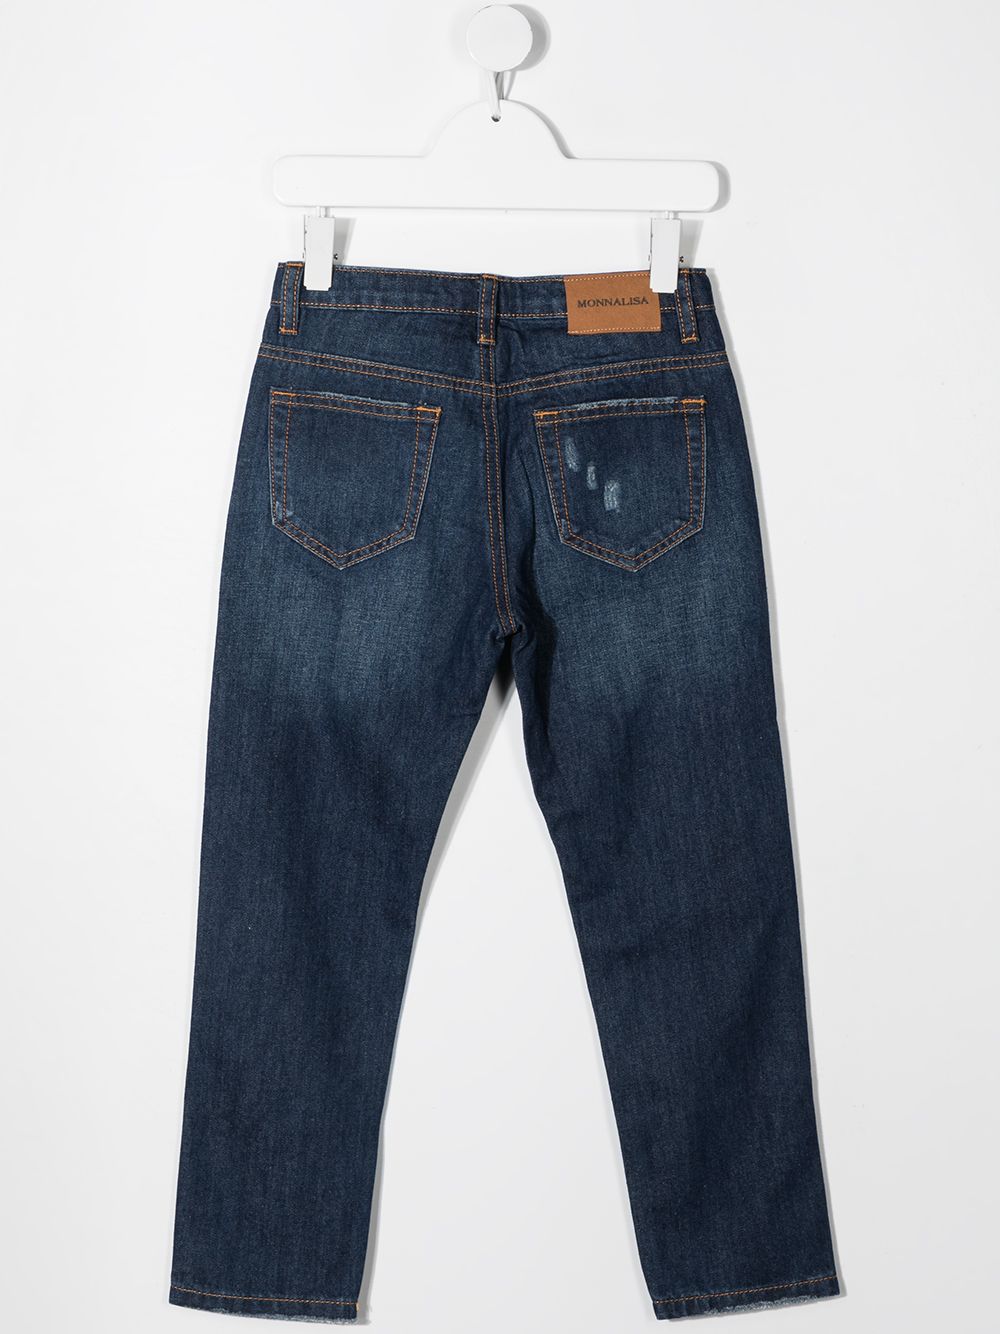 фото Monnalisa прямые джинсы с вышивкой mickey